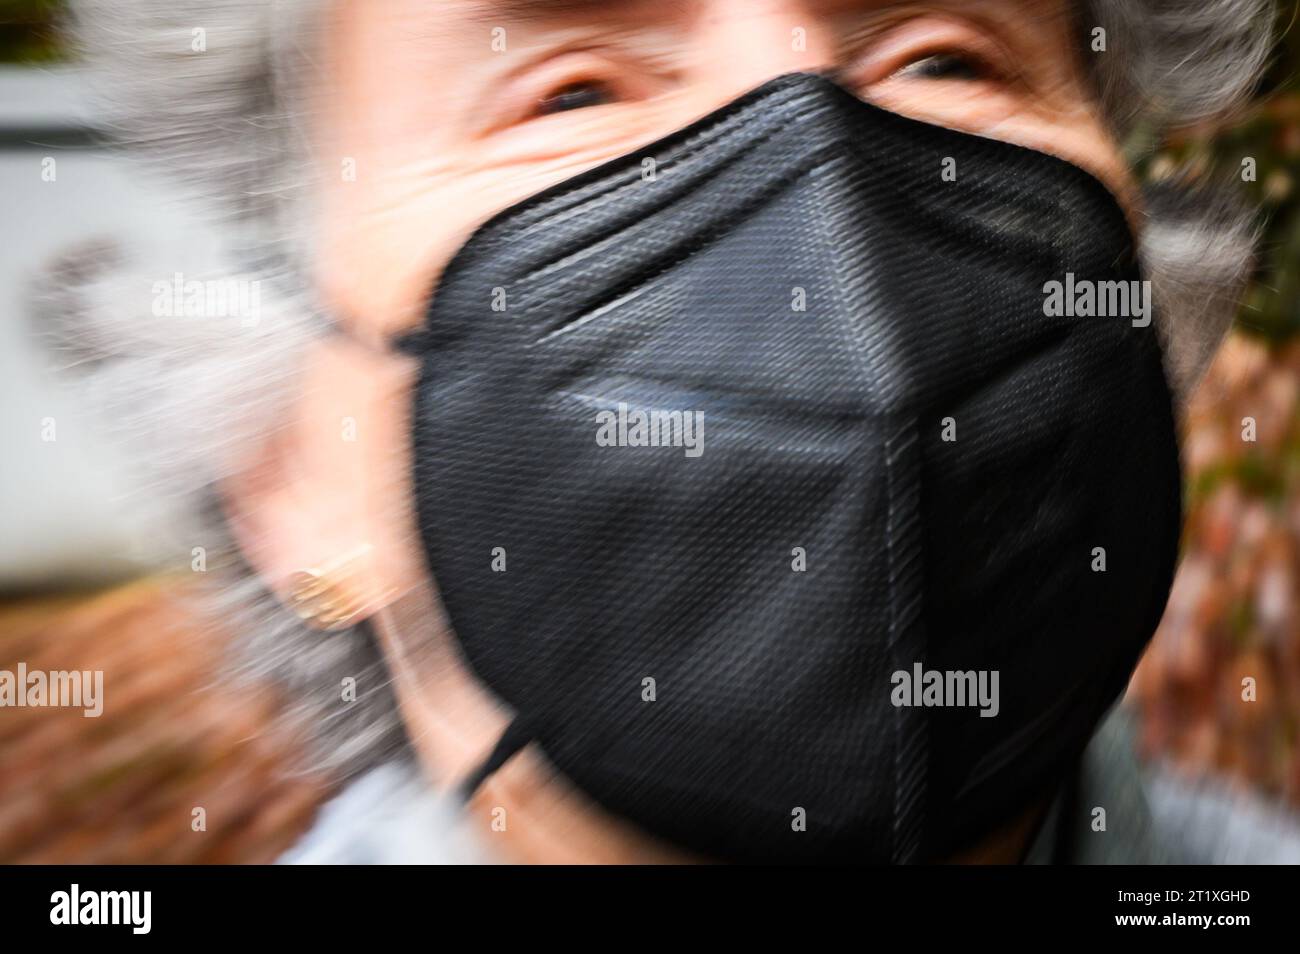 Die Frau trägt eine N95-Gesichtsmaske des gebräuchlichen Typs, da versucht wird, die Ausbreitung von COVID-19 zu kontrollieren. Stockfoto